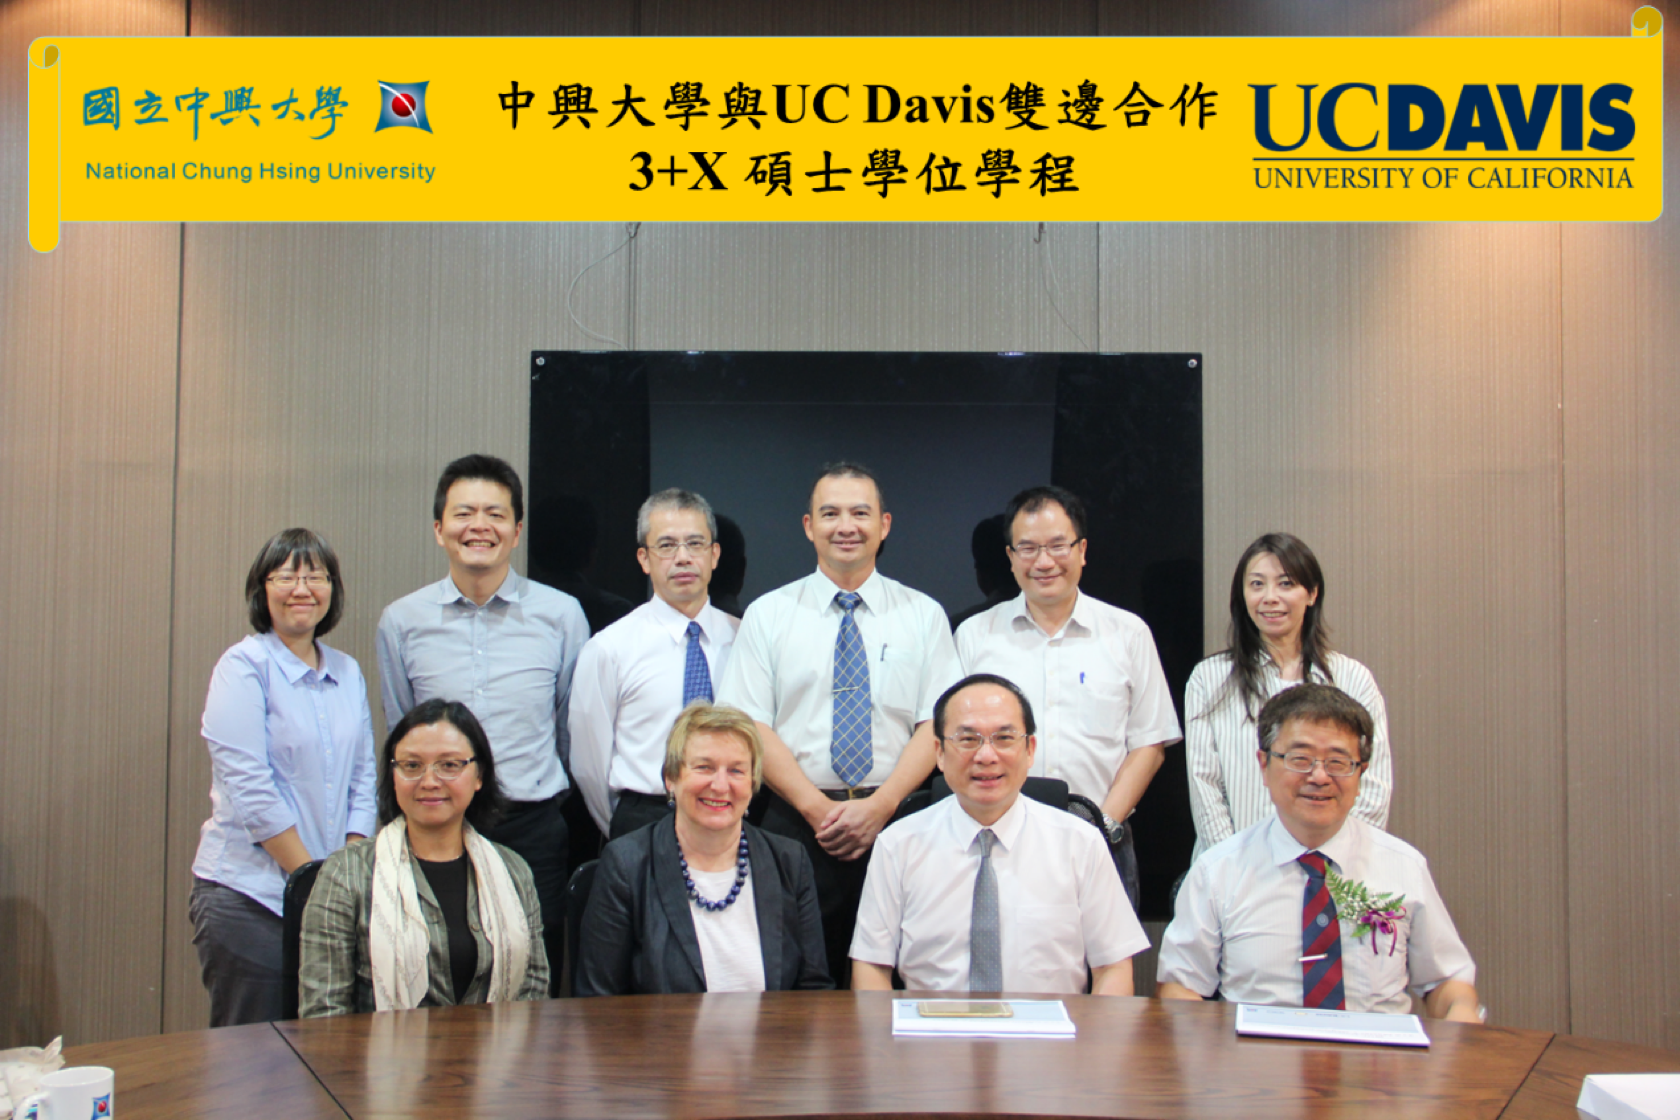 中興大學副校長楊長賢(前排右2)與校內師長，偕同UCD的Joanna Regulska博士(前排左2)及 UCD 的Linxia Liang博士(前排左1)洽談中興大學與UC Davis雙邊合作3+X 碩士學位學程簽約事宜及合影。